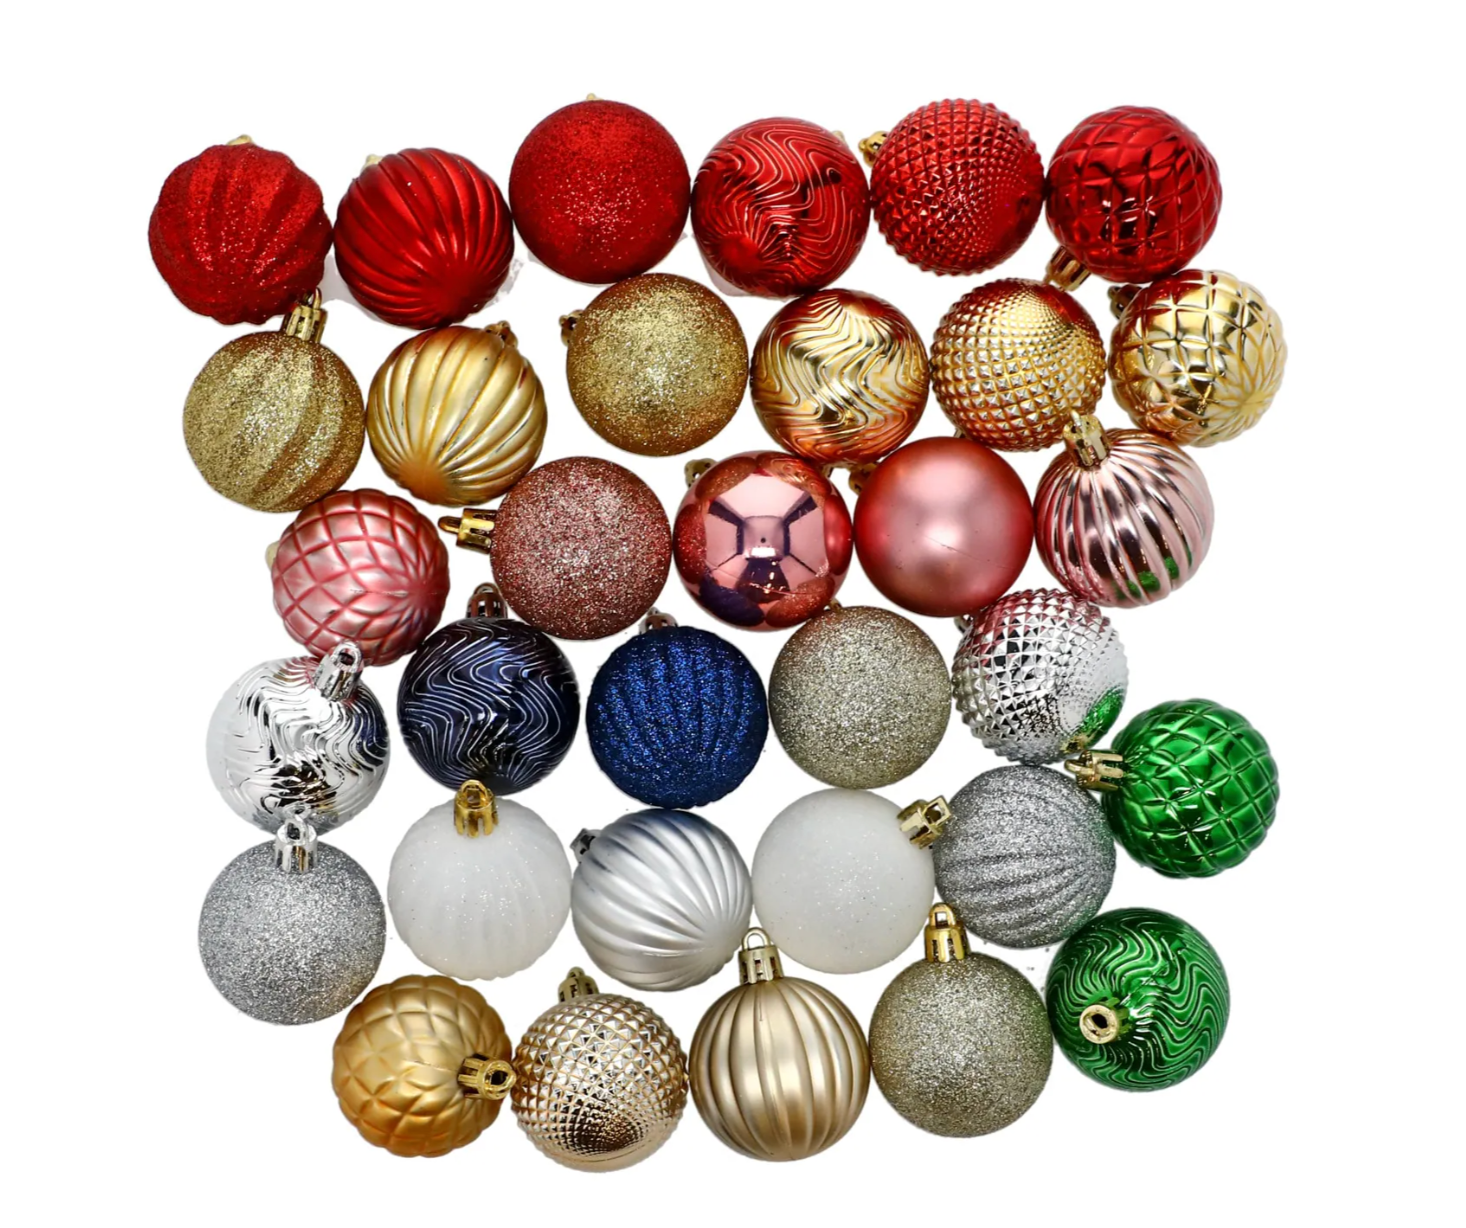 Bündel von Plastikkugel-Ornamenten in verschiedenen Formen und Farben.